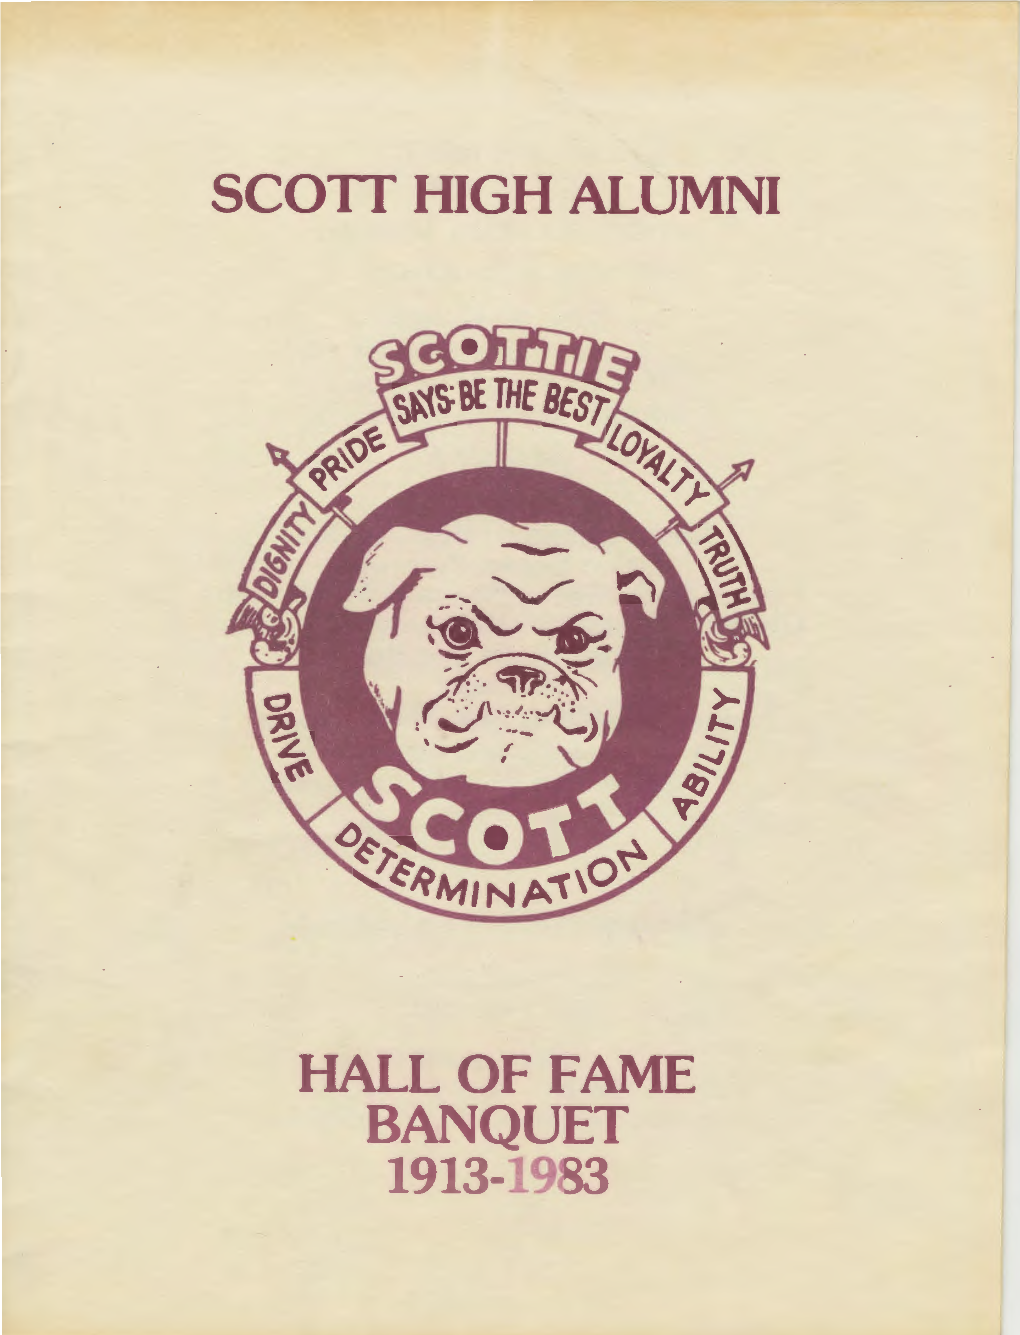 Scoit High Alumni